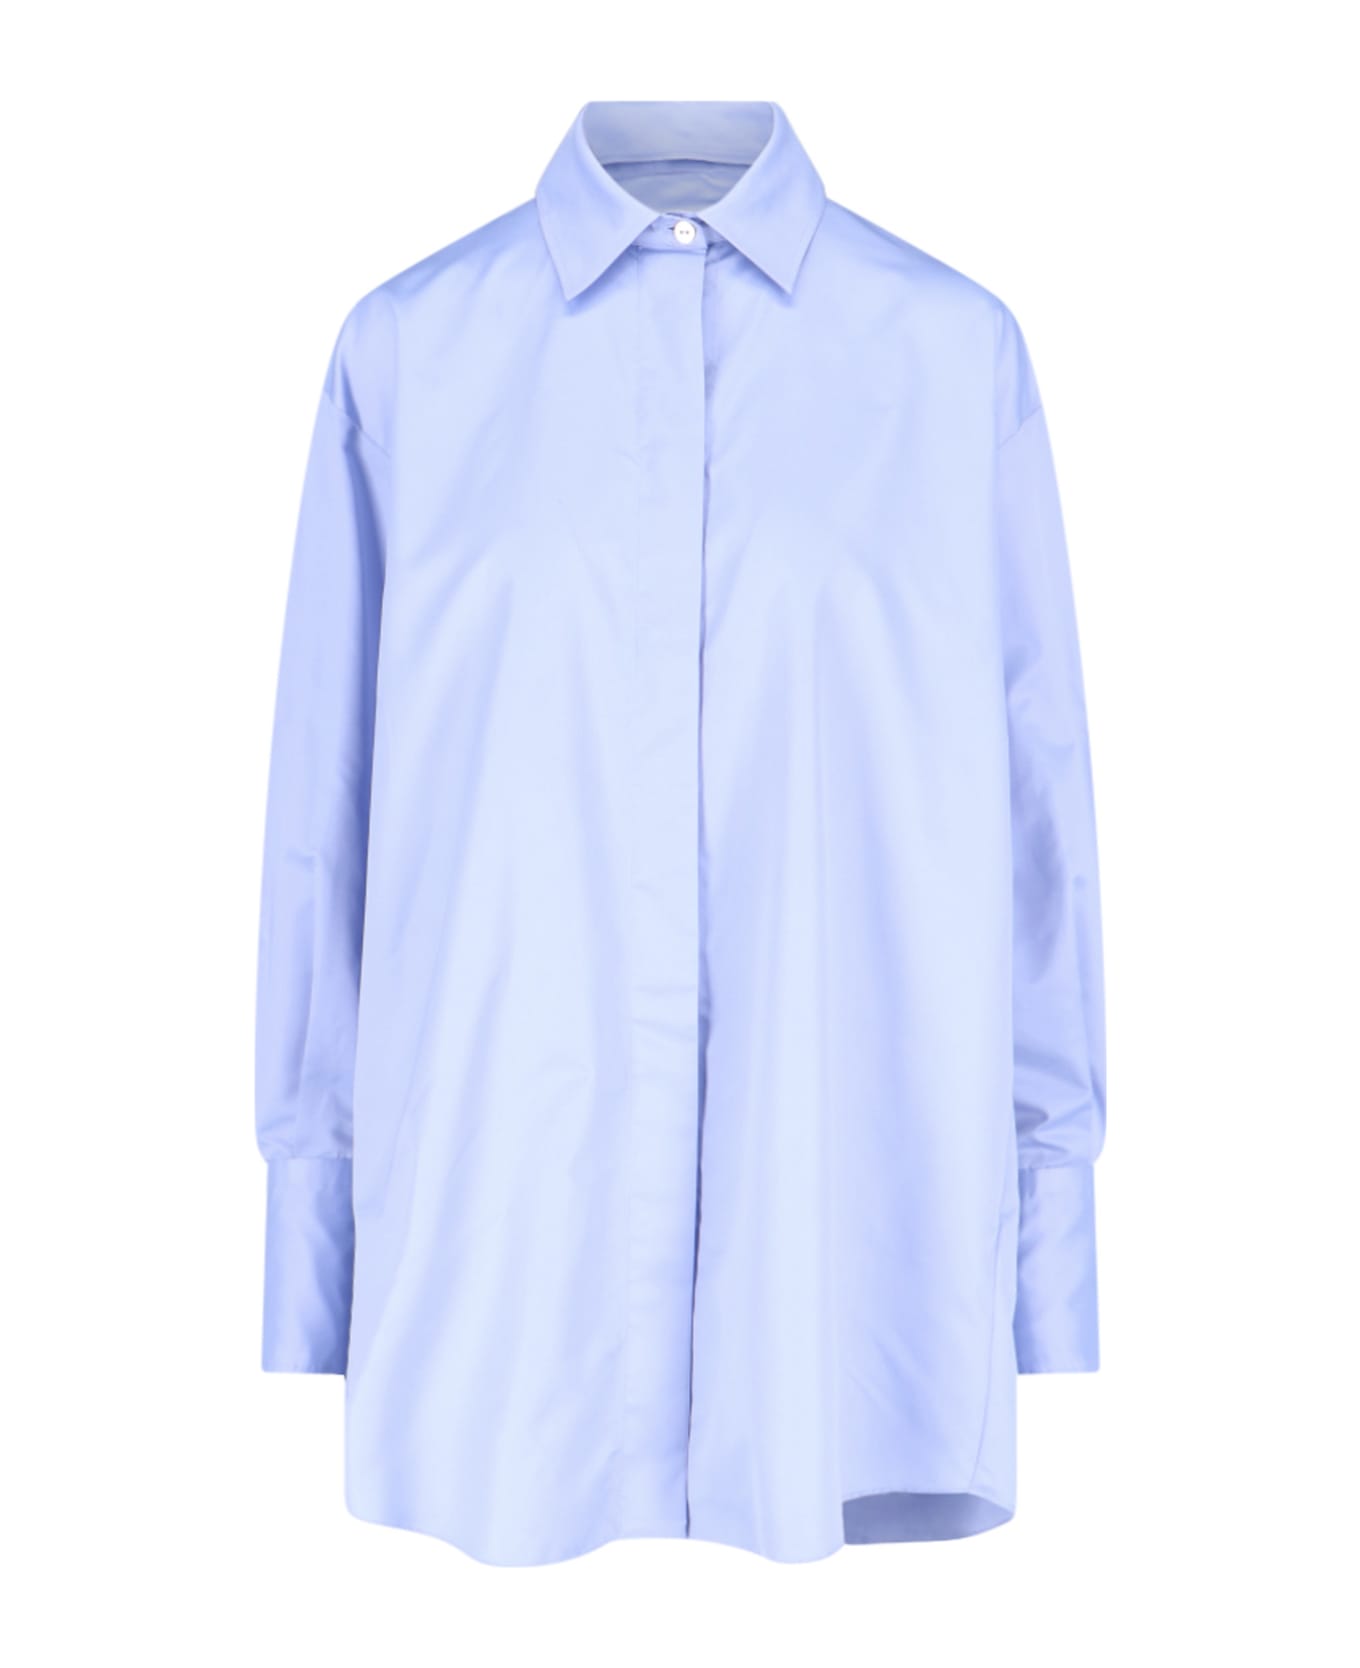 Patou Satin Shirt - Light Blue シャツ